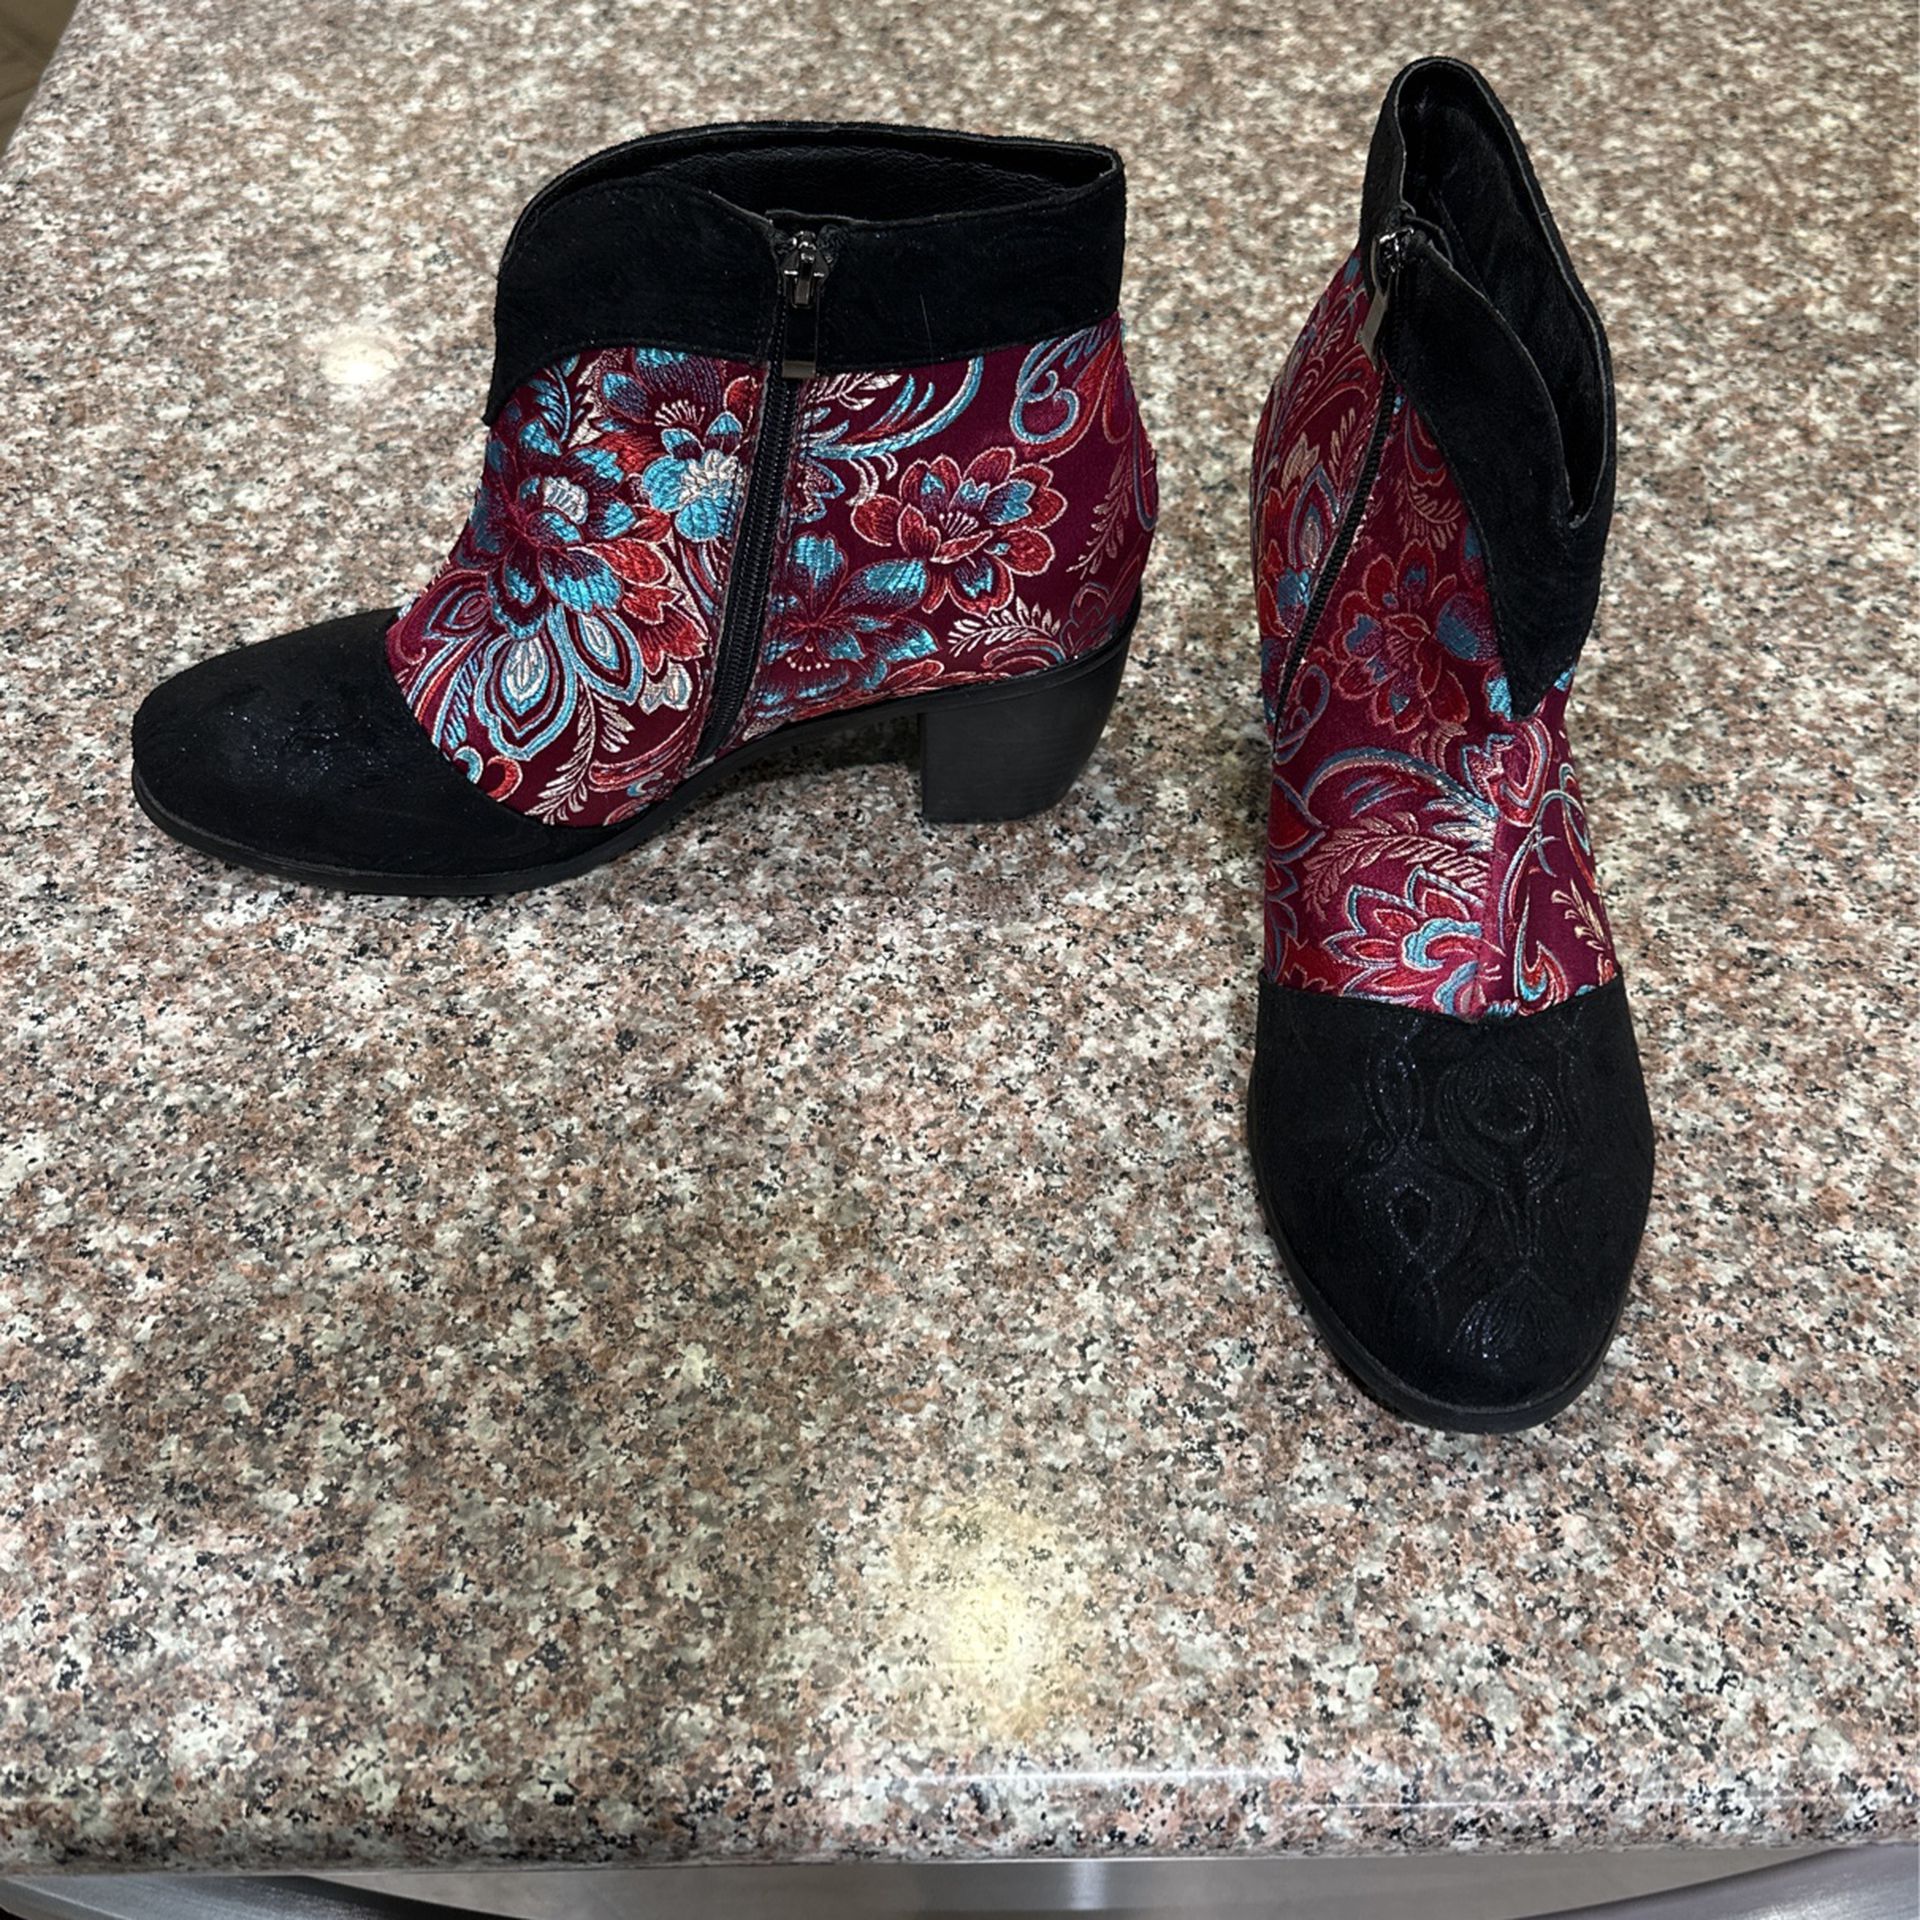 Beacon “Texas” Multi Print Size 12 Ankle Boot